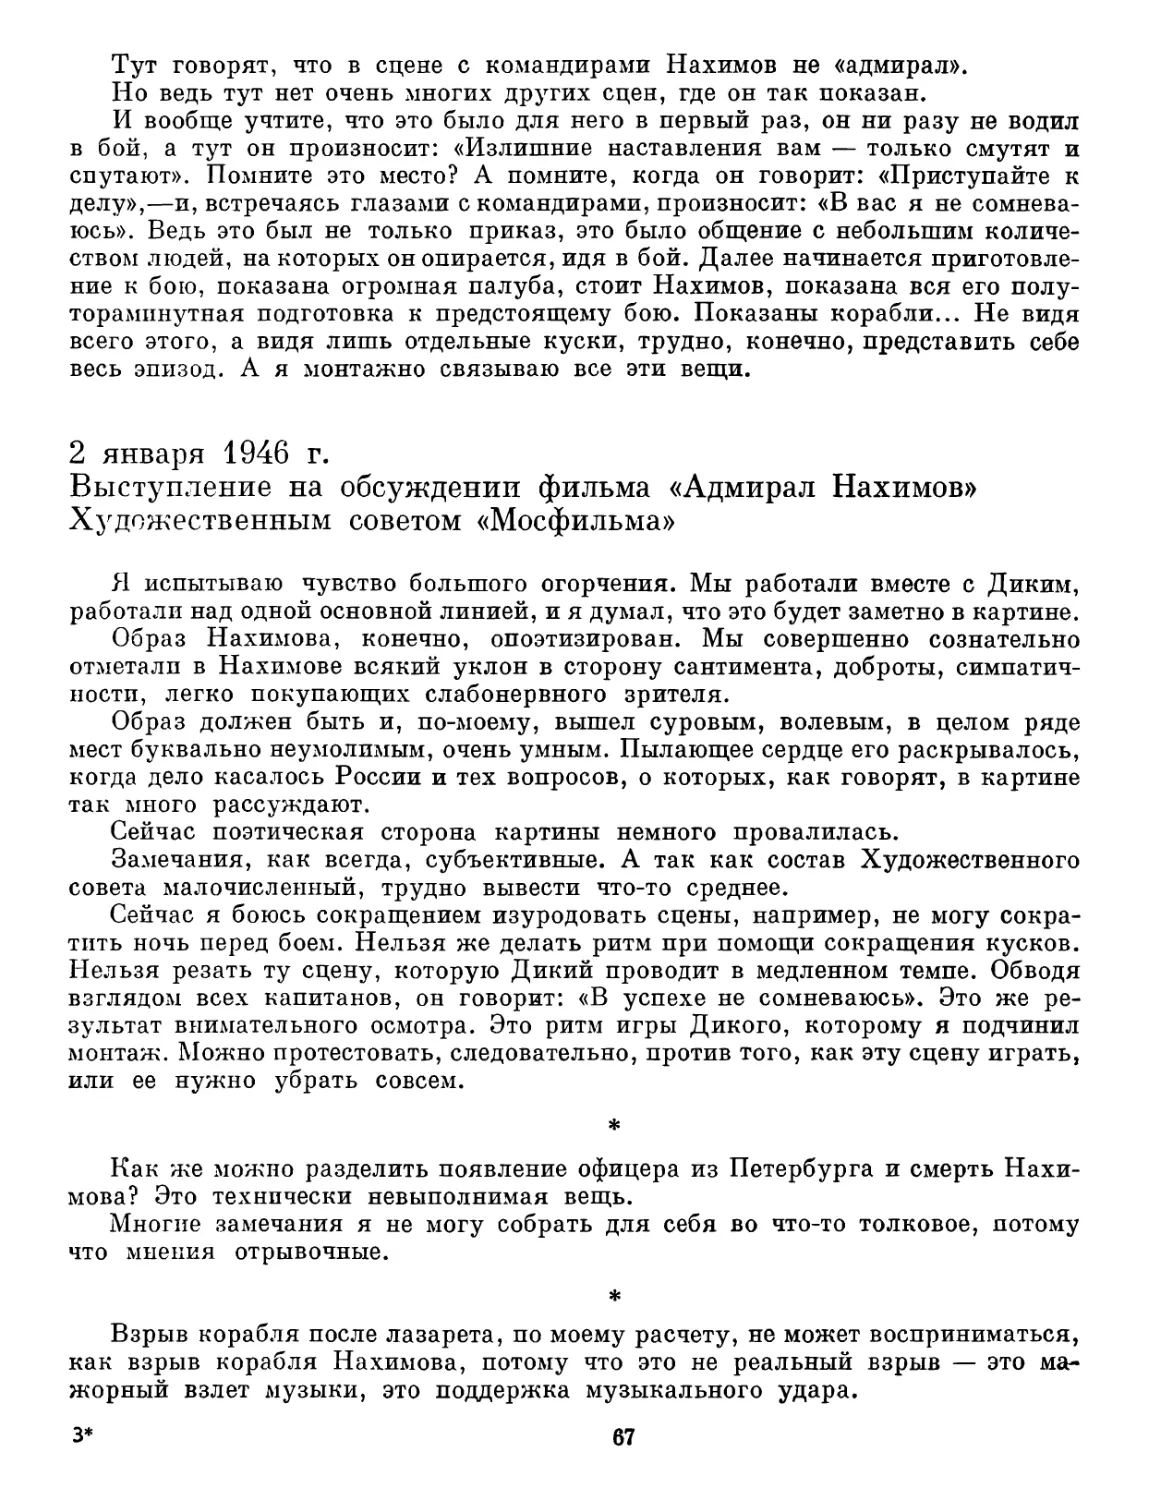 2 января 1946 г. Выступление на обсуждении фильма «Адмирал Нахимов» Художественным советом «Мосфильма»